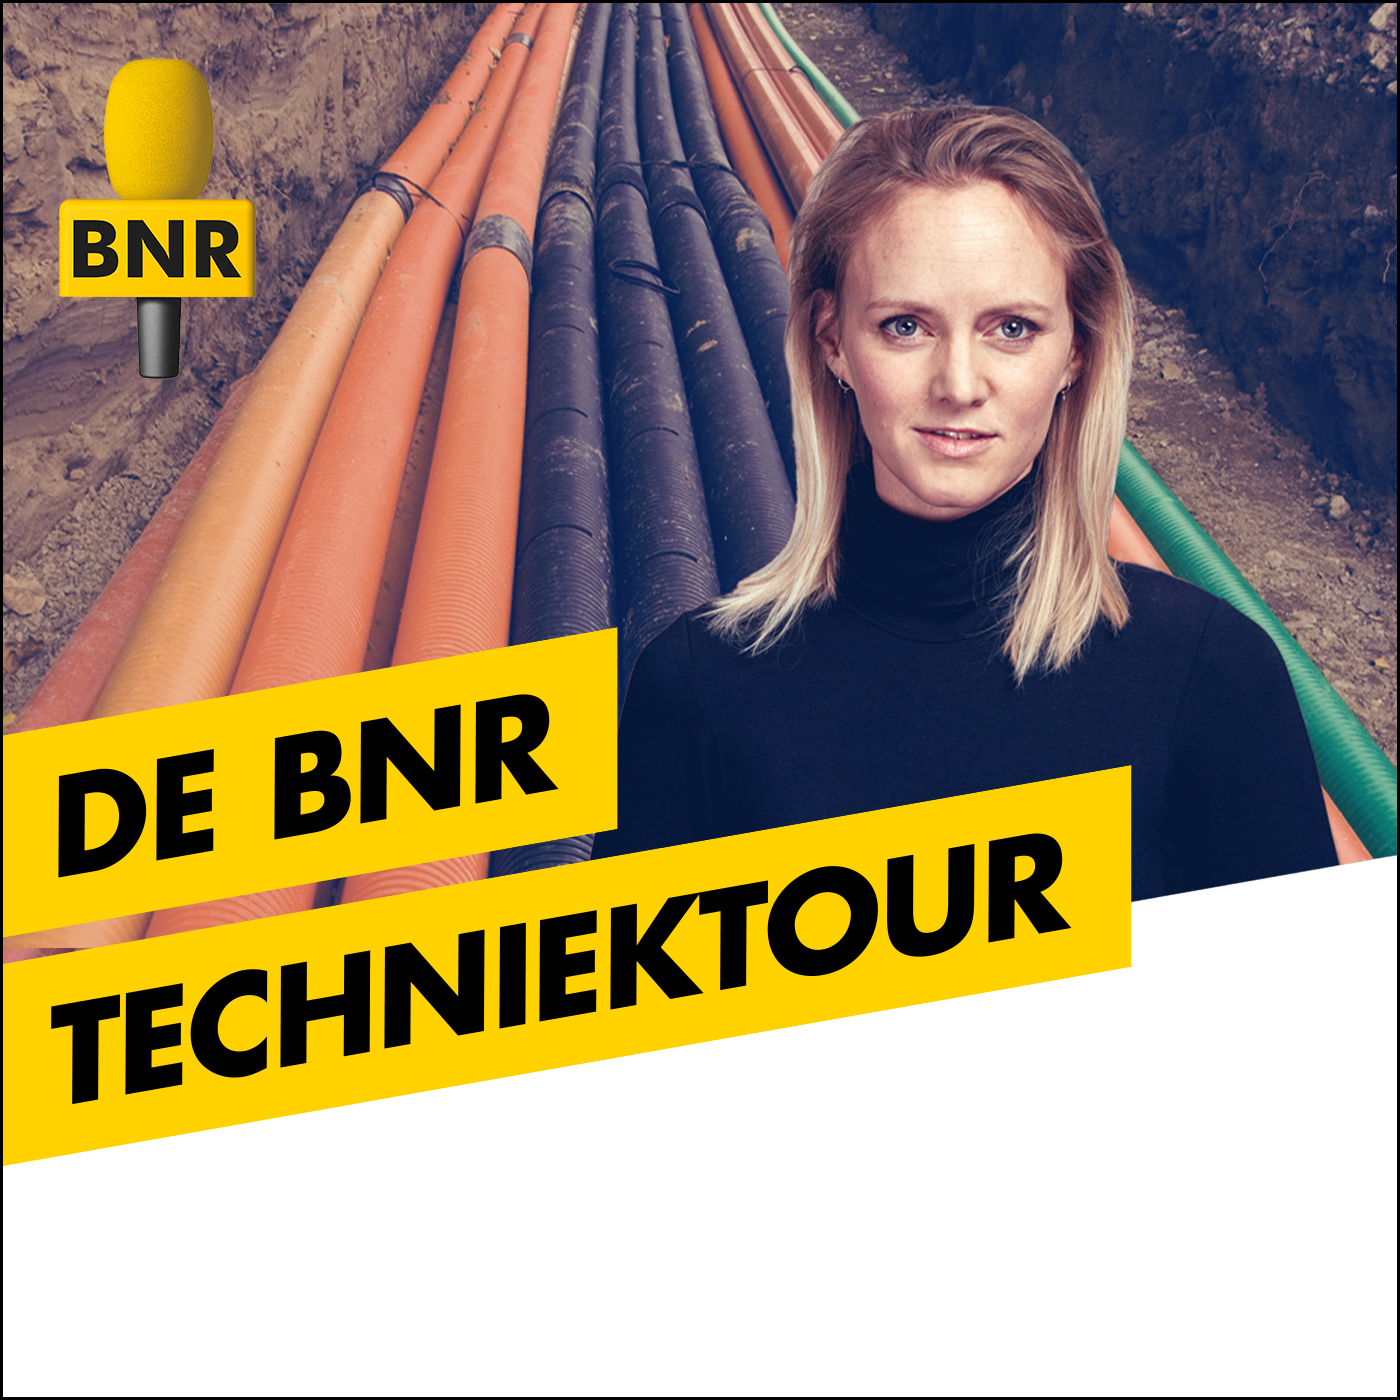 De BNR Techniektour